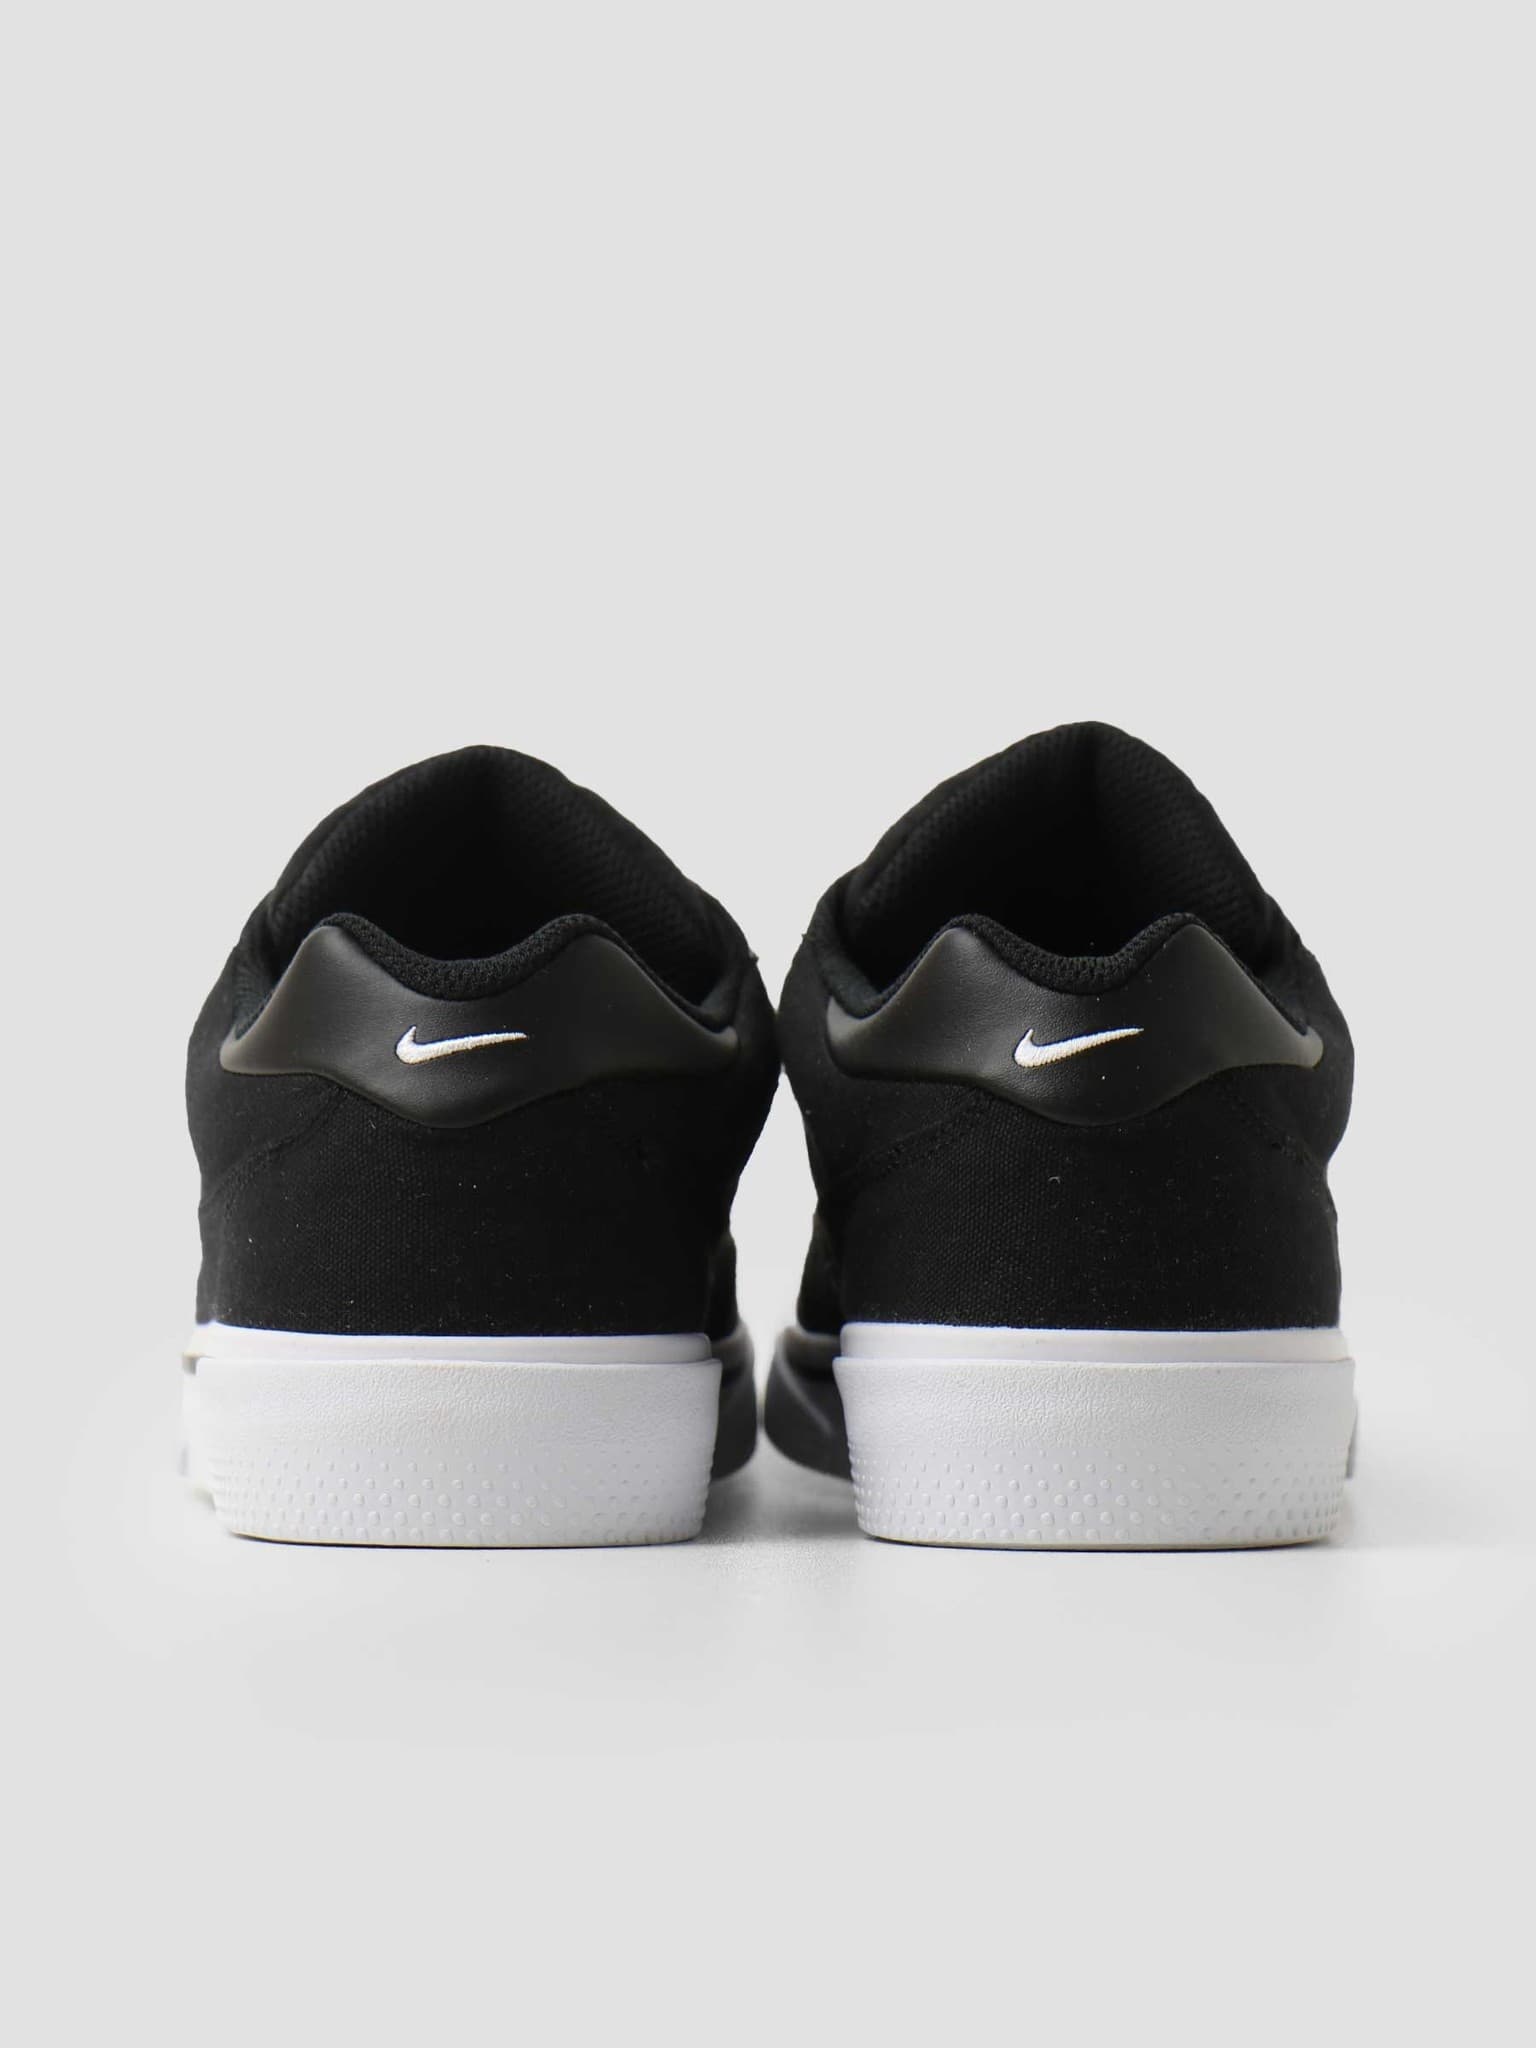 Nike Gts 97 Black White DA1446-001